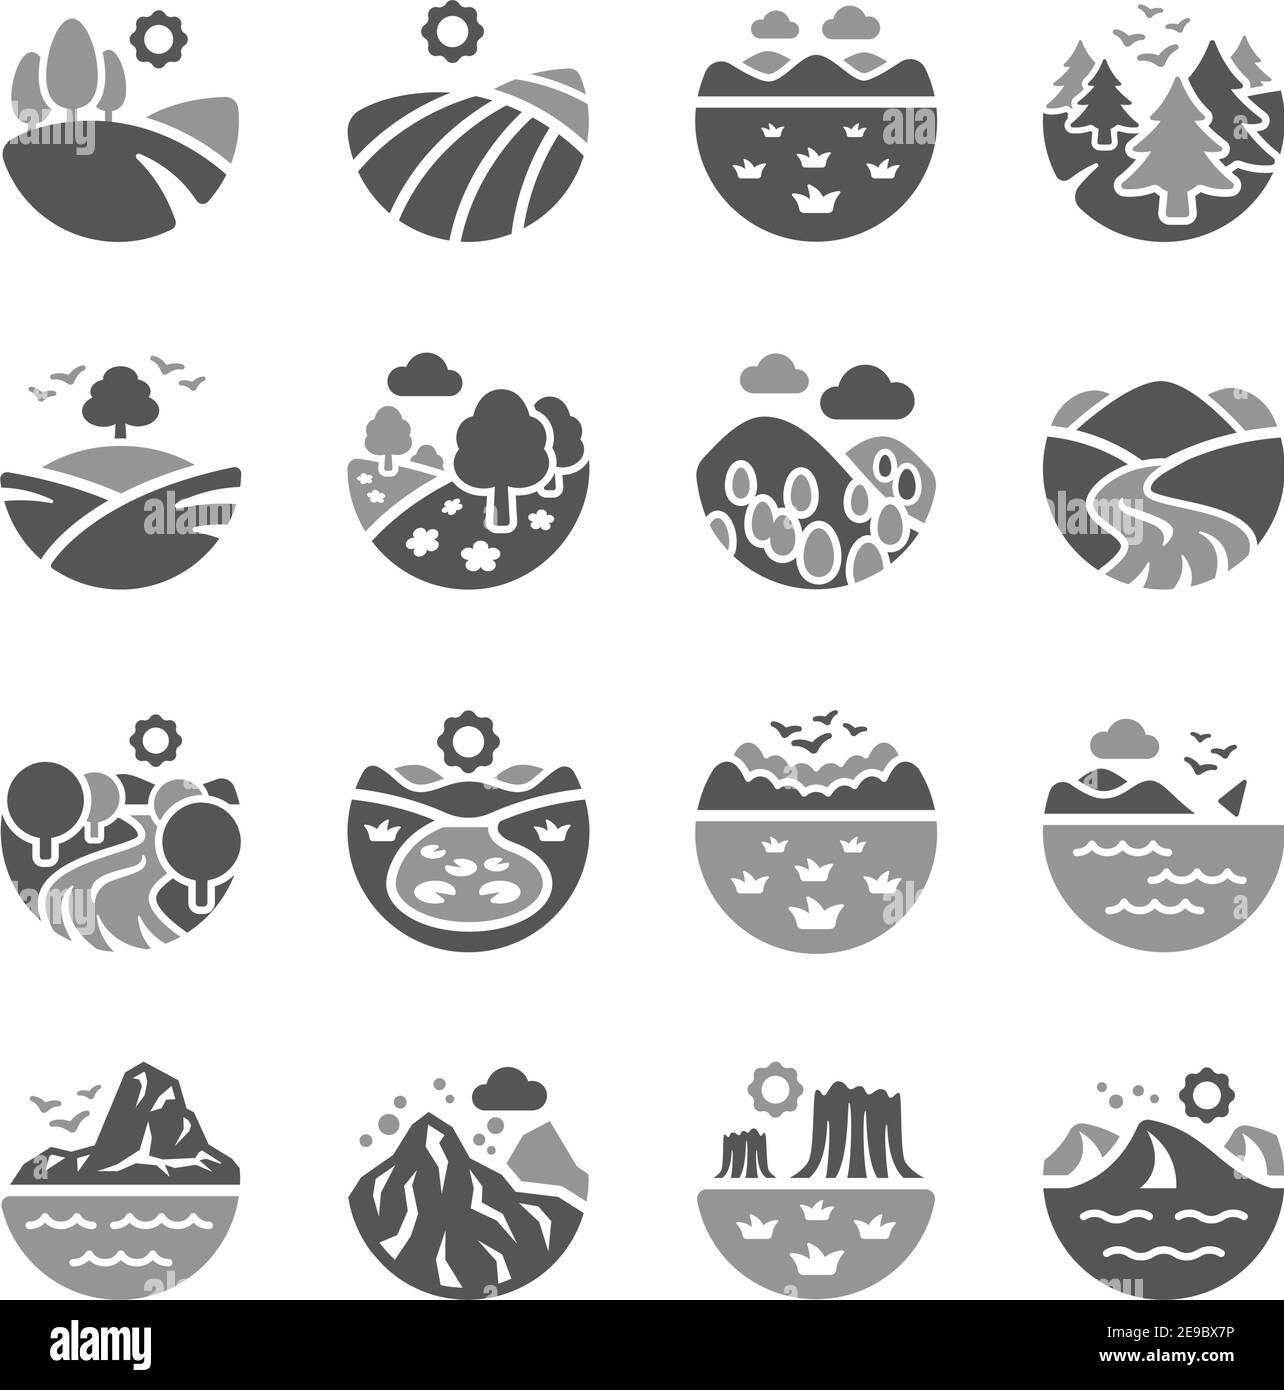 jeu d'icônes paysage et nature, vecteur et illustration Illustration de Vecteur